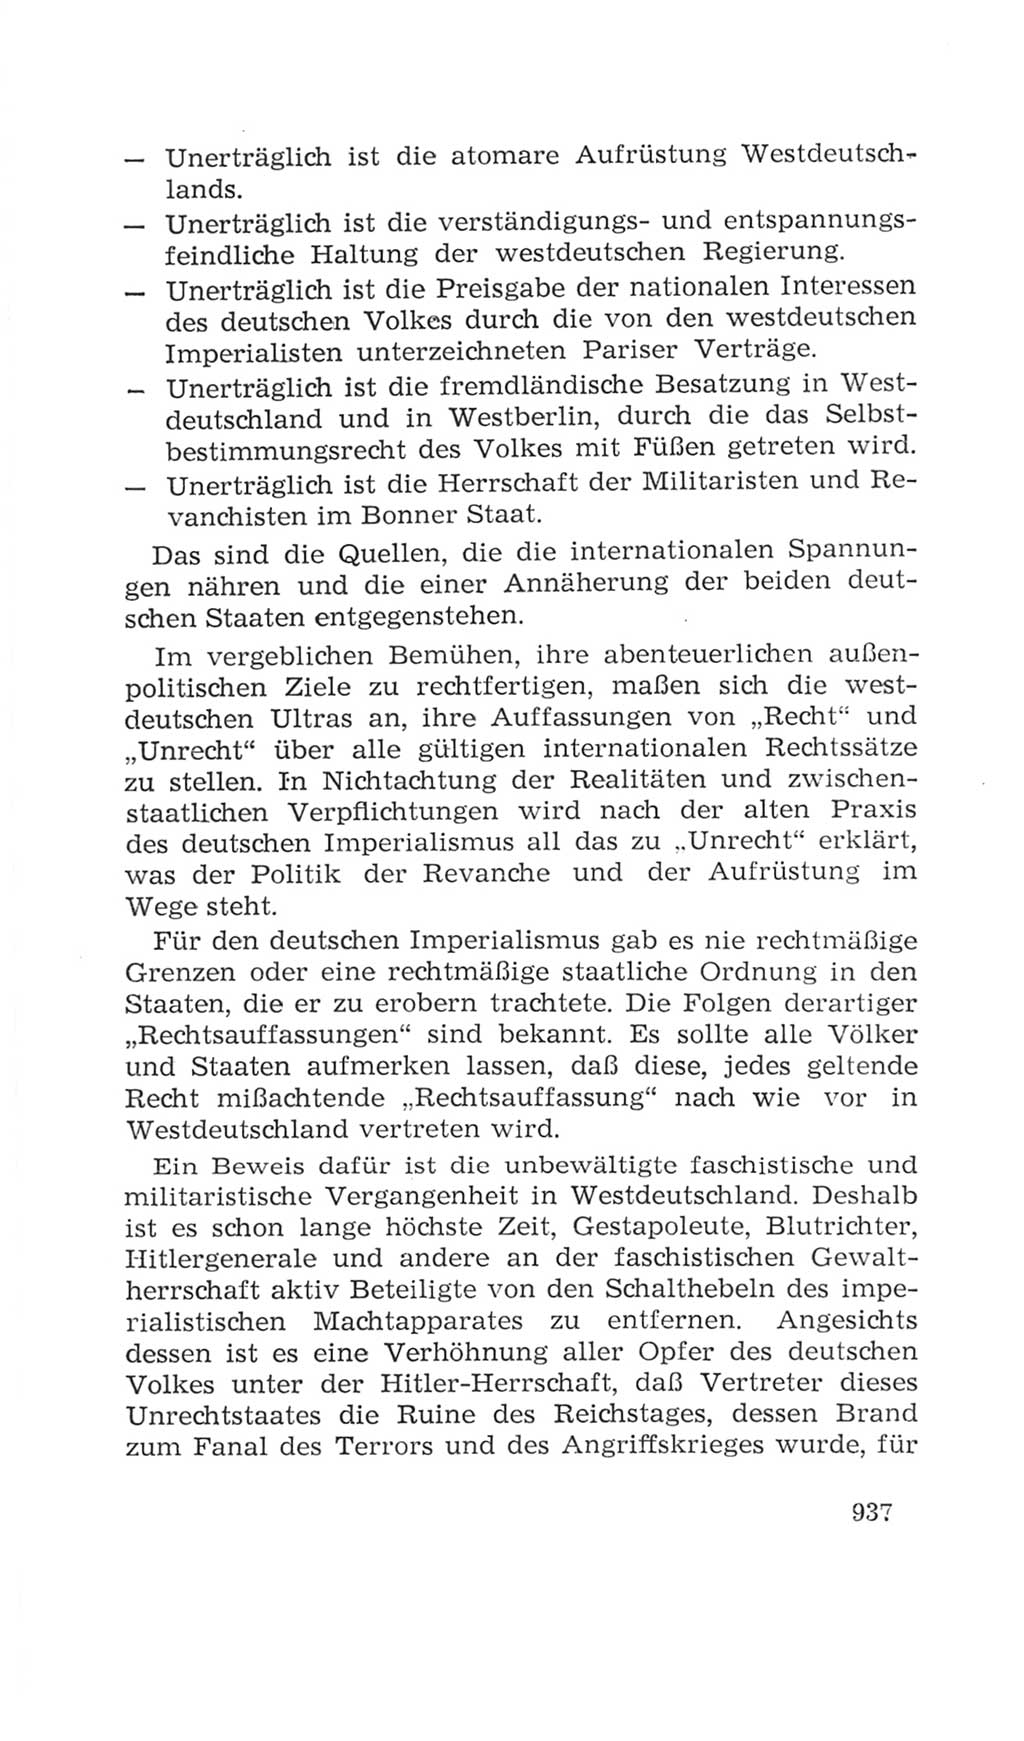 Volkskammer (VK) der Deutschen Demokratischen Republik (DDR), 4. Wahlperiode 1963-1967, Seite 937 (VK. DDR 4. WP. 1963-1967, S. 937)